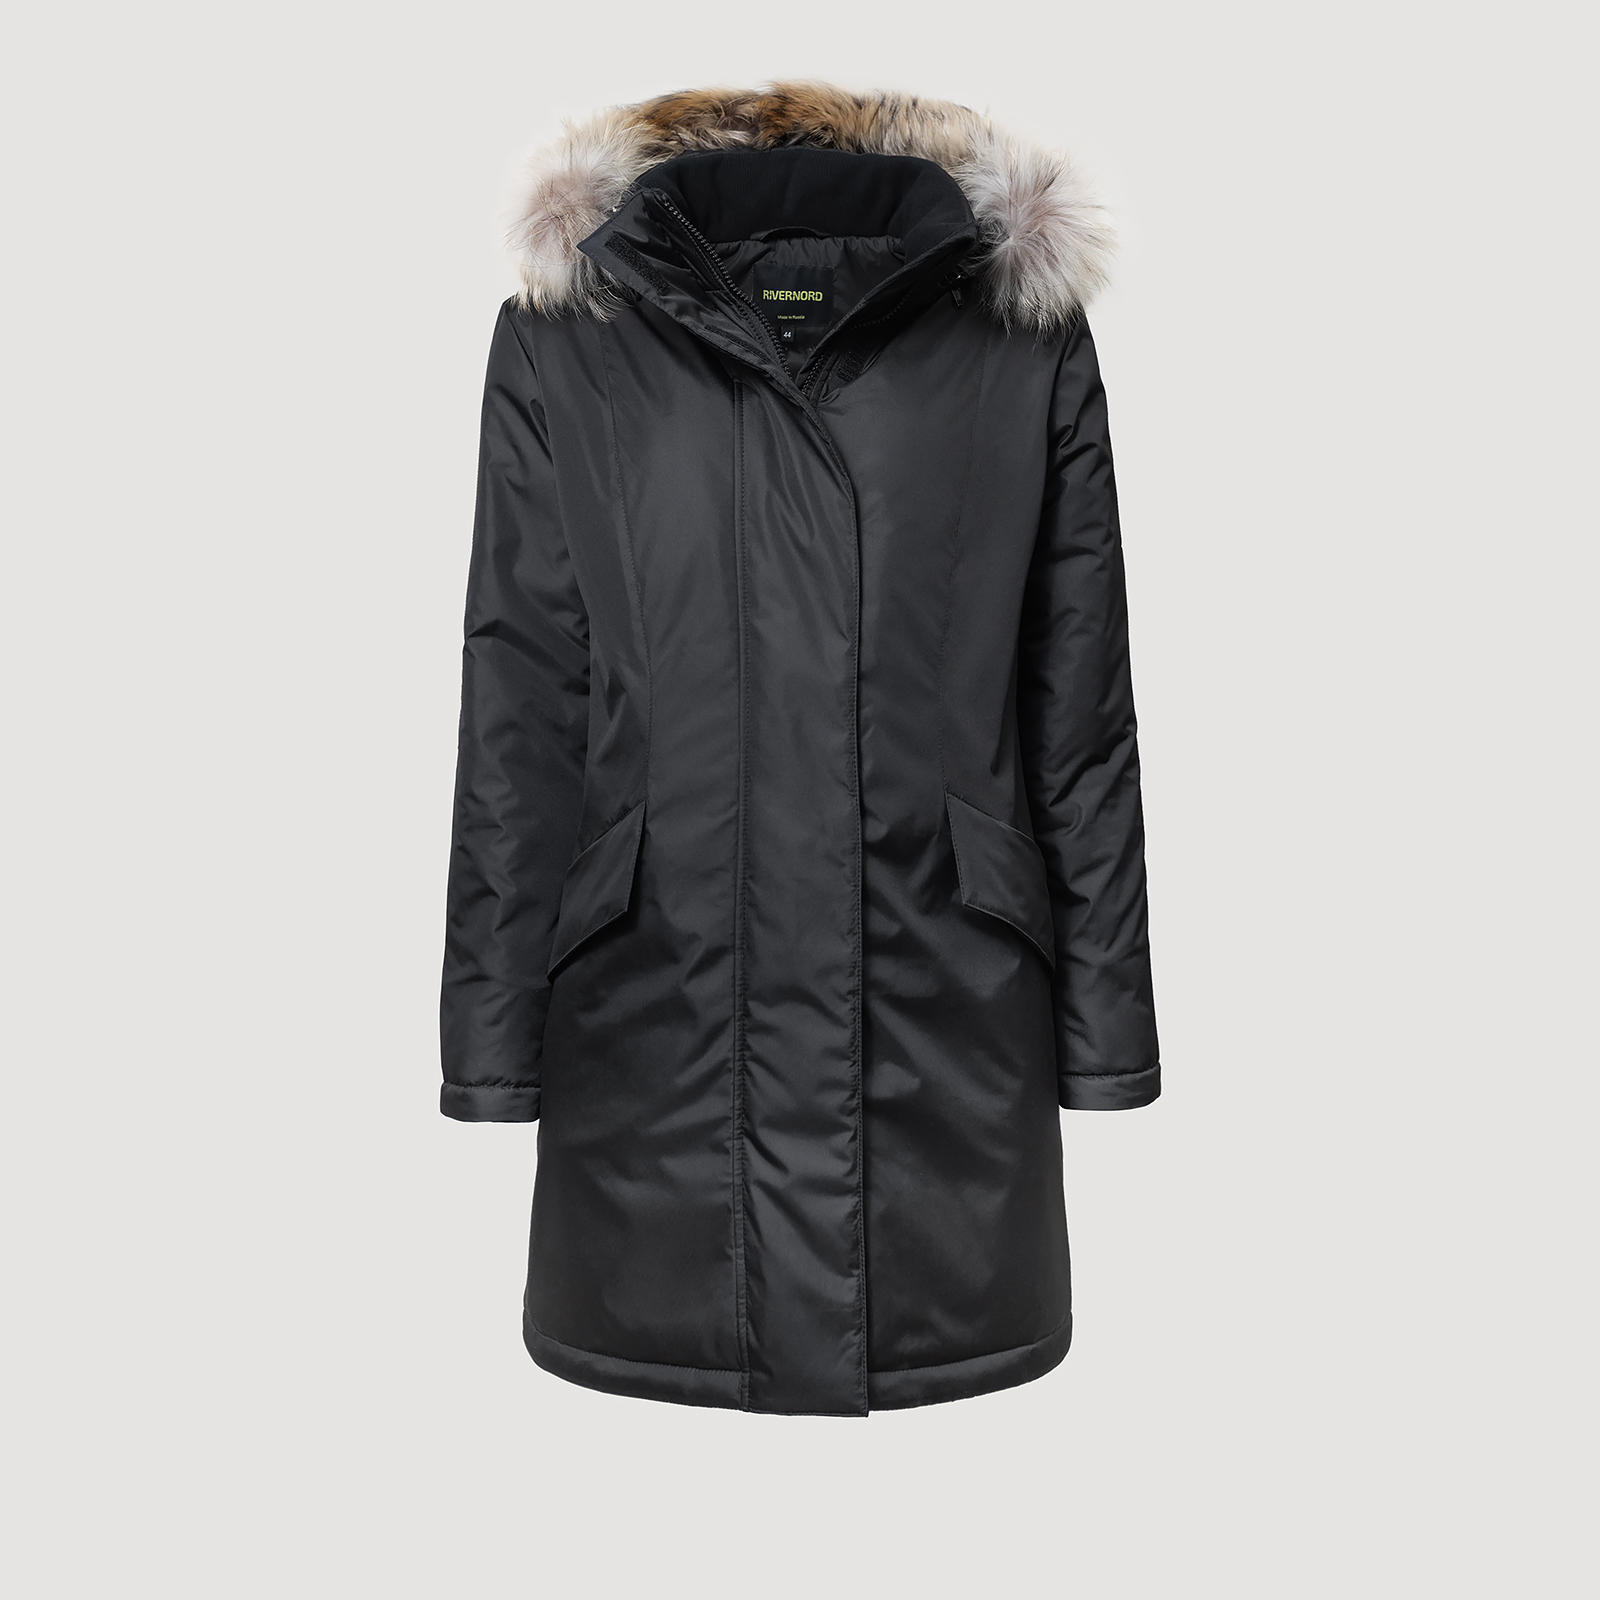 Женская зимняя куртка Active Winter цвет черный